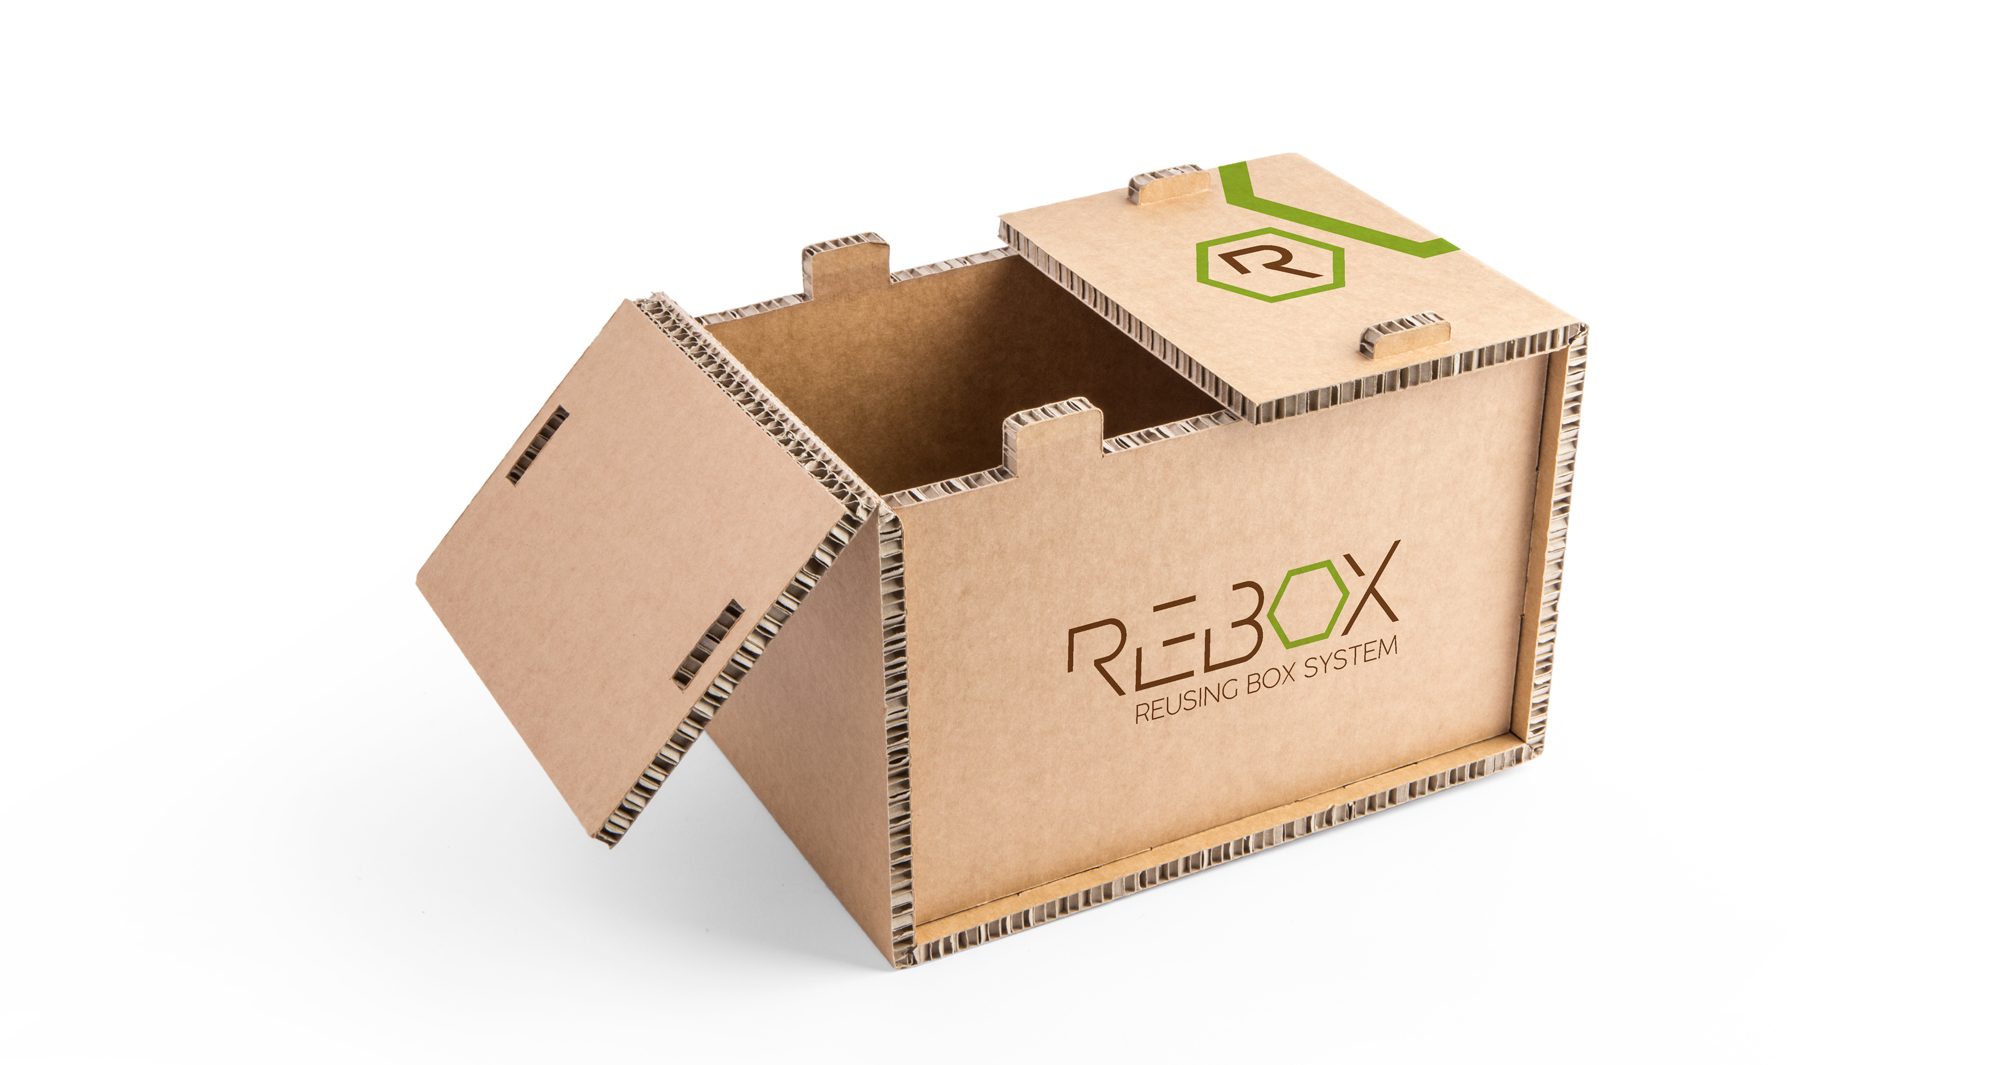 Re-Box